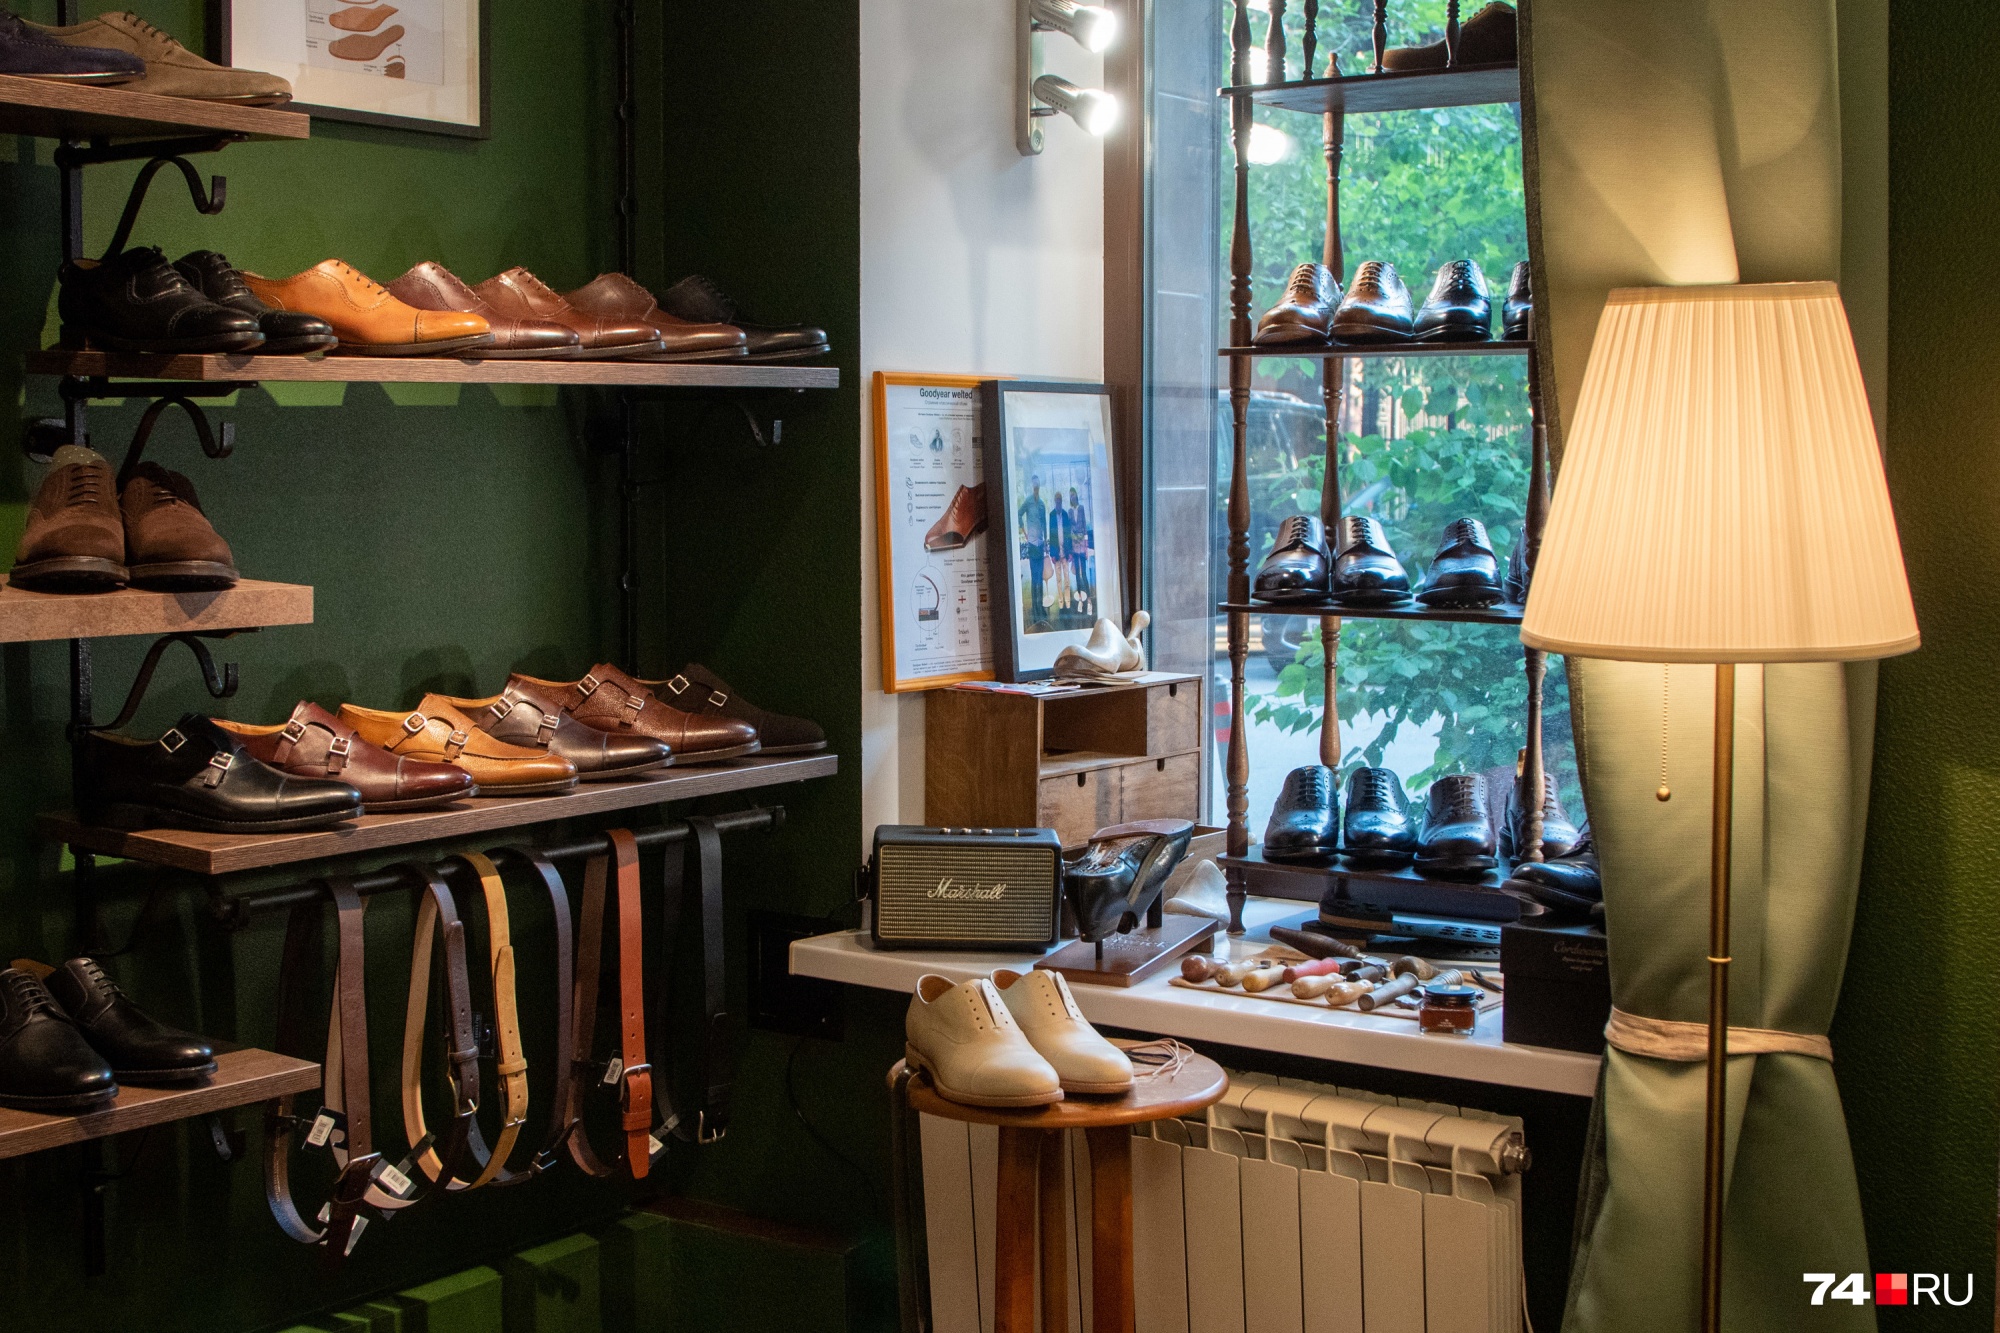 Стоимость обуви в магазине Александра — от 11 до 25 тысяч рублей